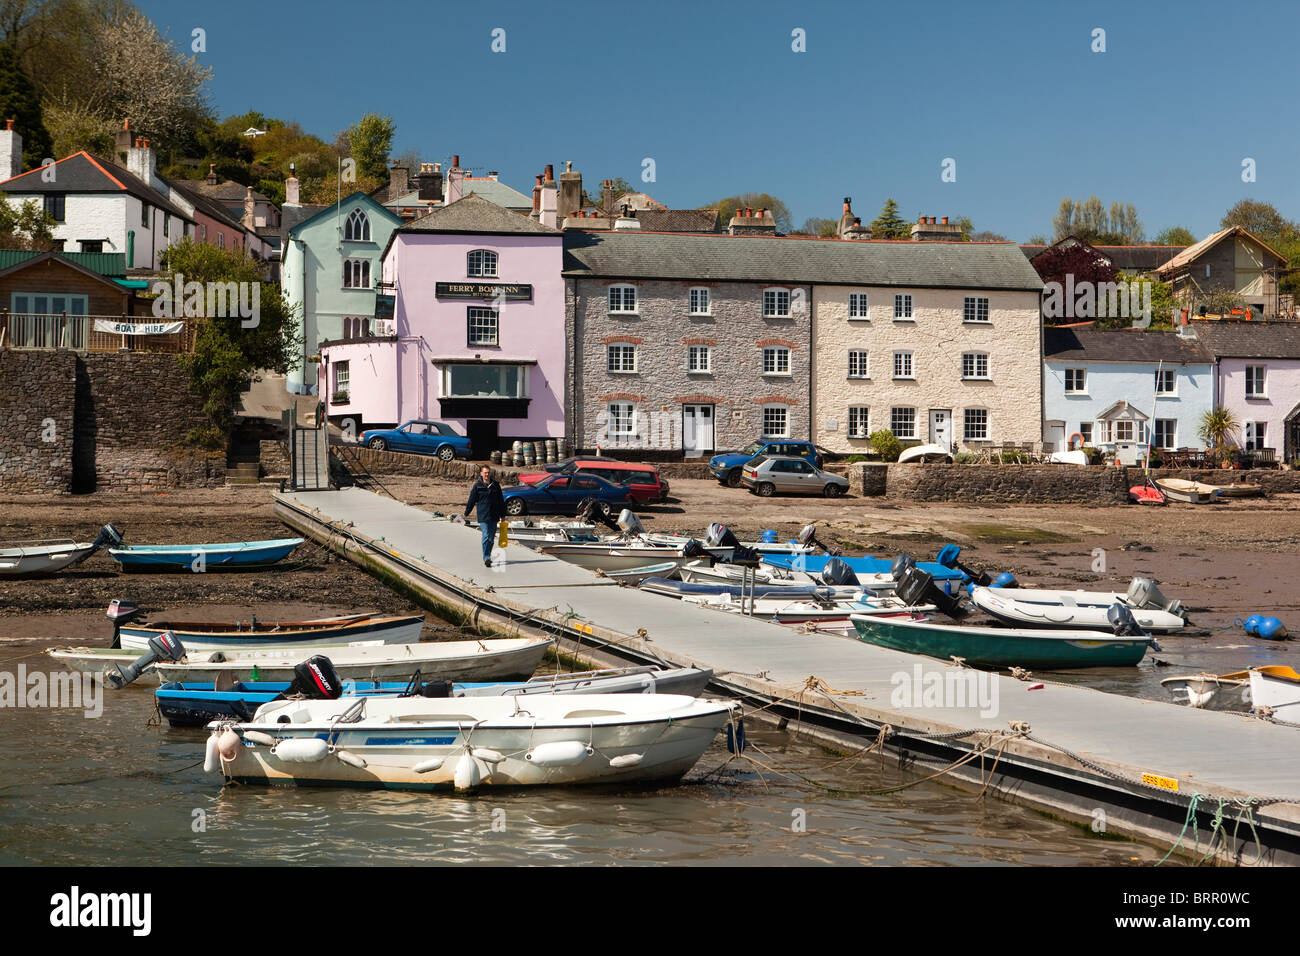 Royaume-uni, Angleterre, Devon, Dittisham, bateaux amarrés devant des maisons peintes de couleurs vives riverside sur le quai Banque D'Images